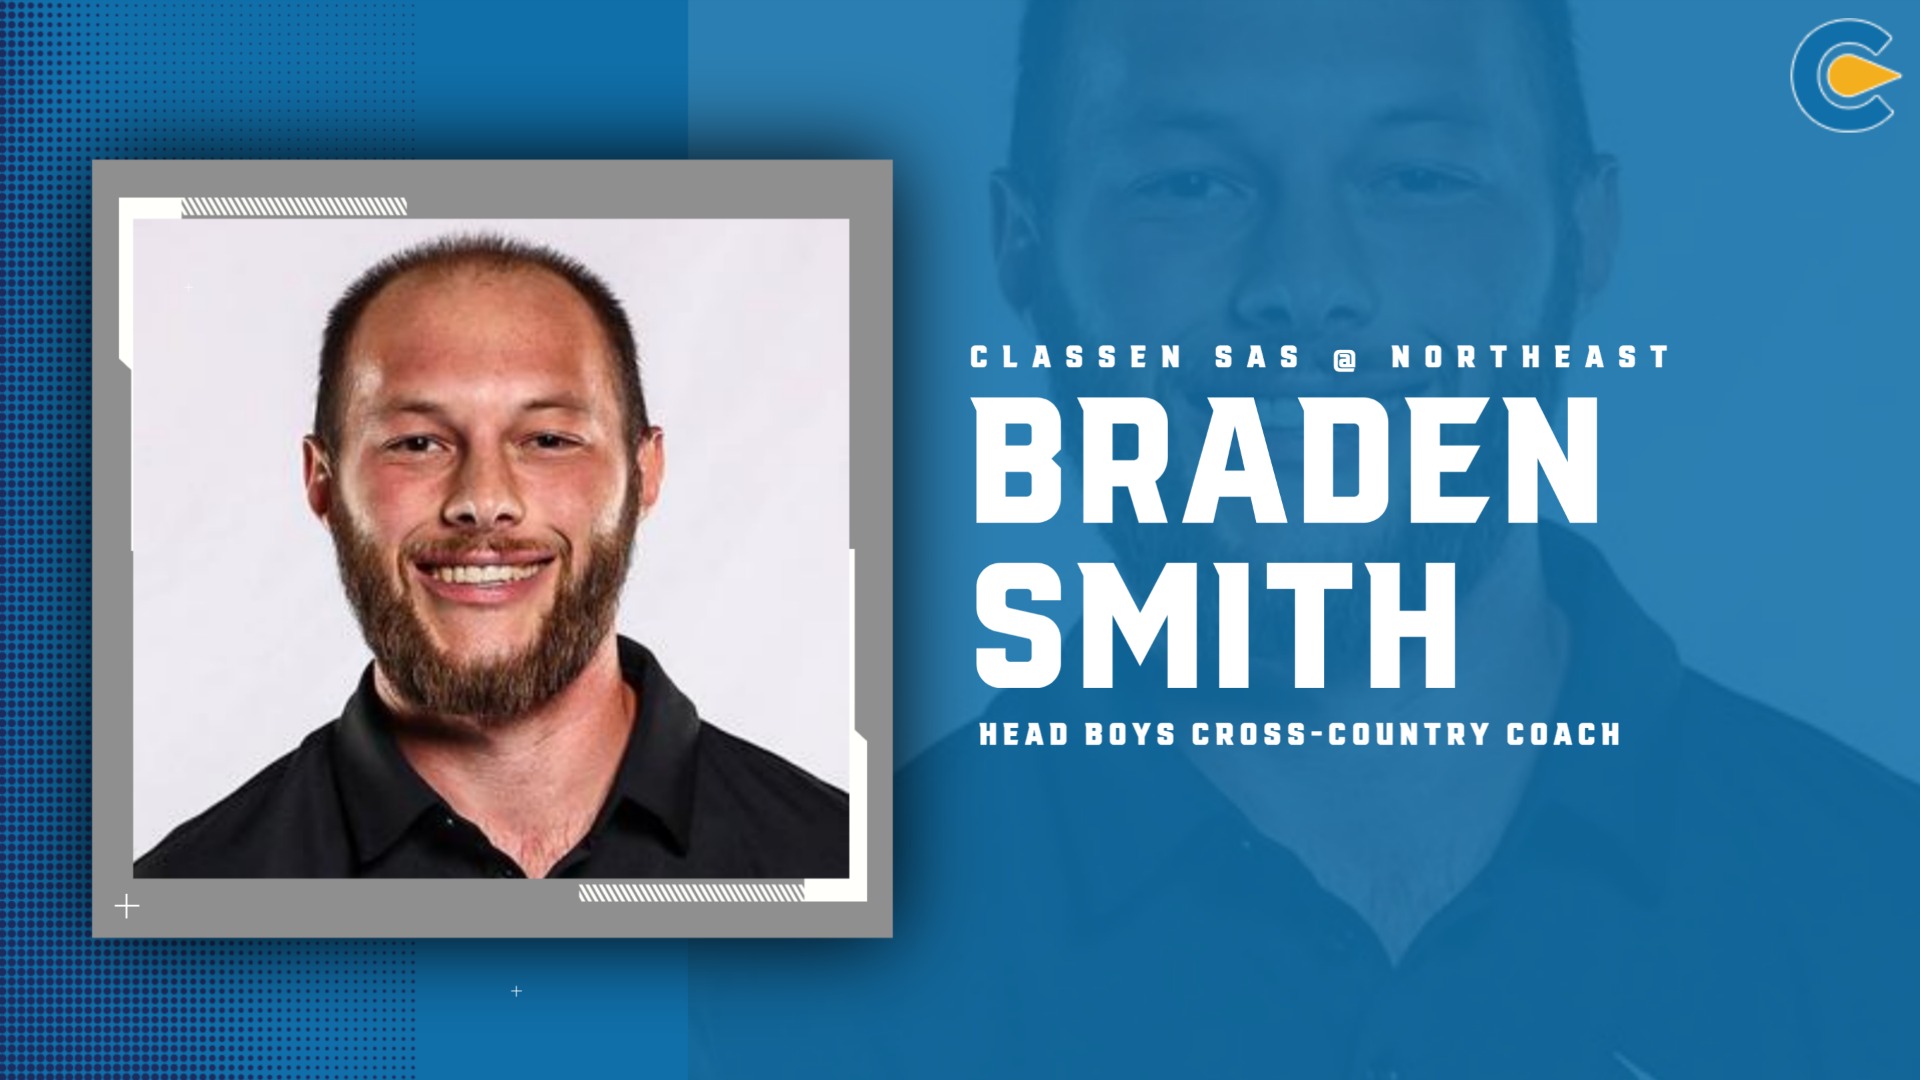 Slide 9 - Braden Smith Named Head Coach for Classen SAS Boys Cross-Country